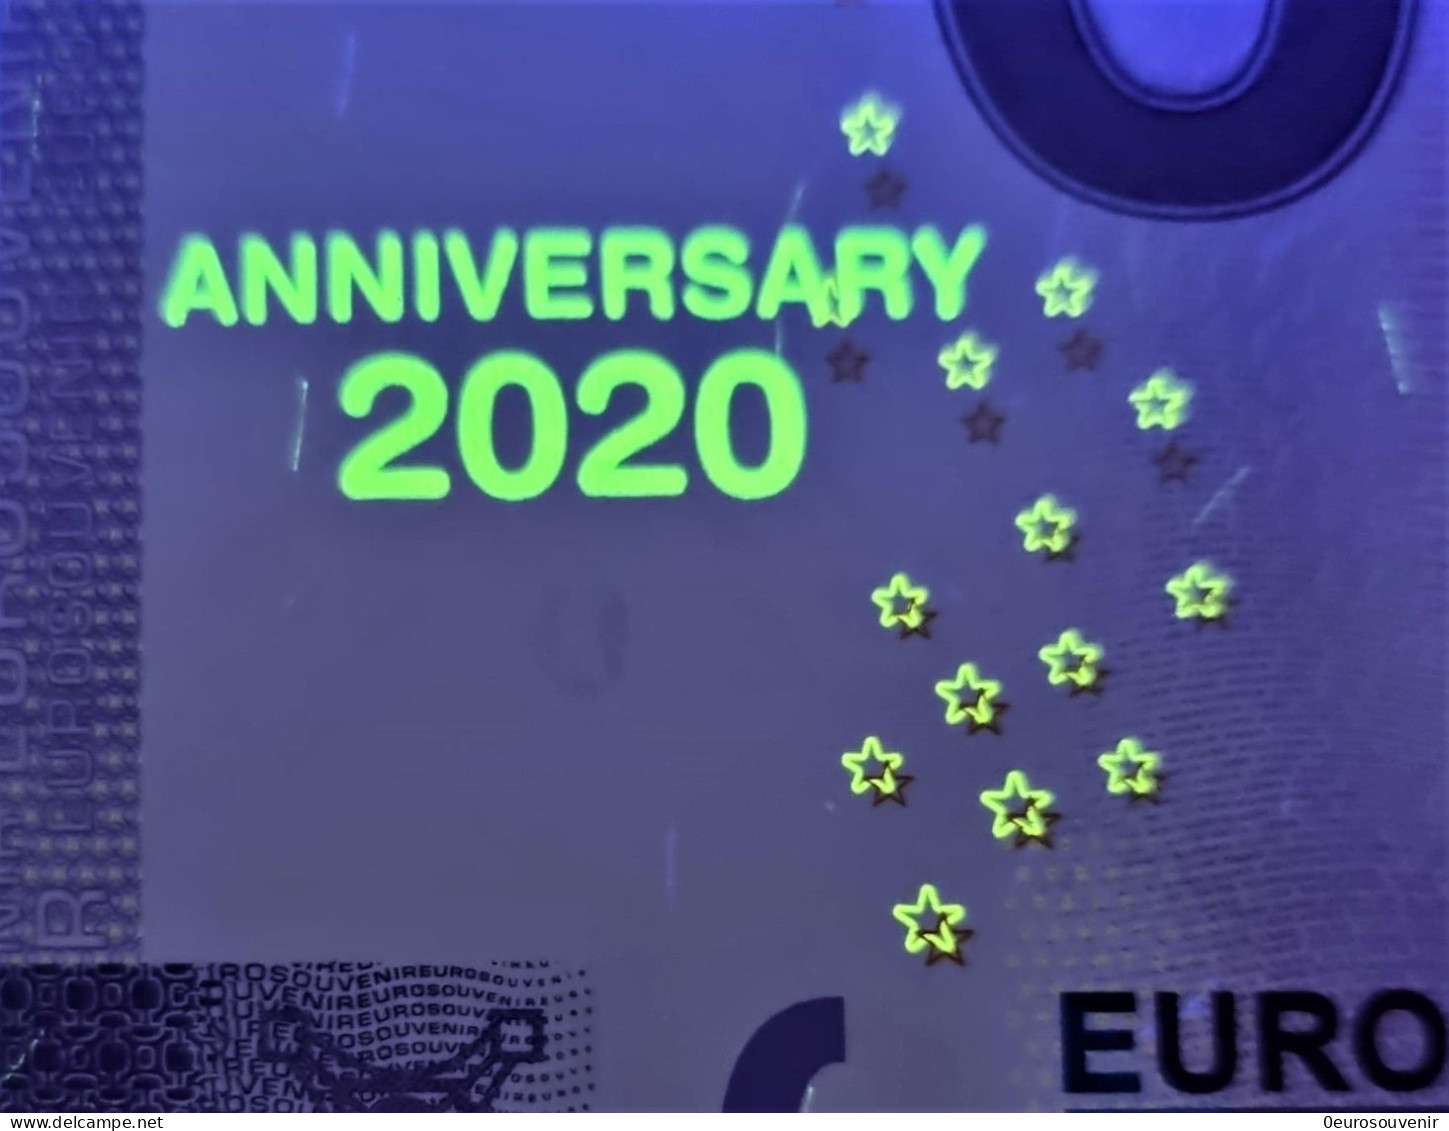 0-Euro PEBC 2020-1 BANKBILJET UIT HET HUWELIJKSJAAR  Set NORMAL+ANNIVERSARY - Privéproeven